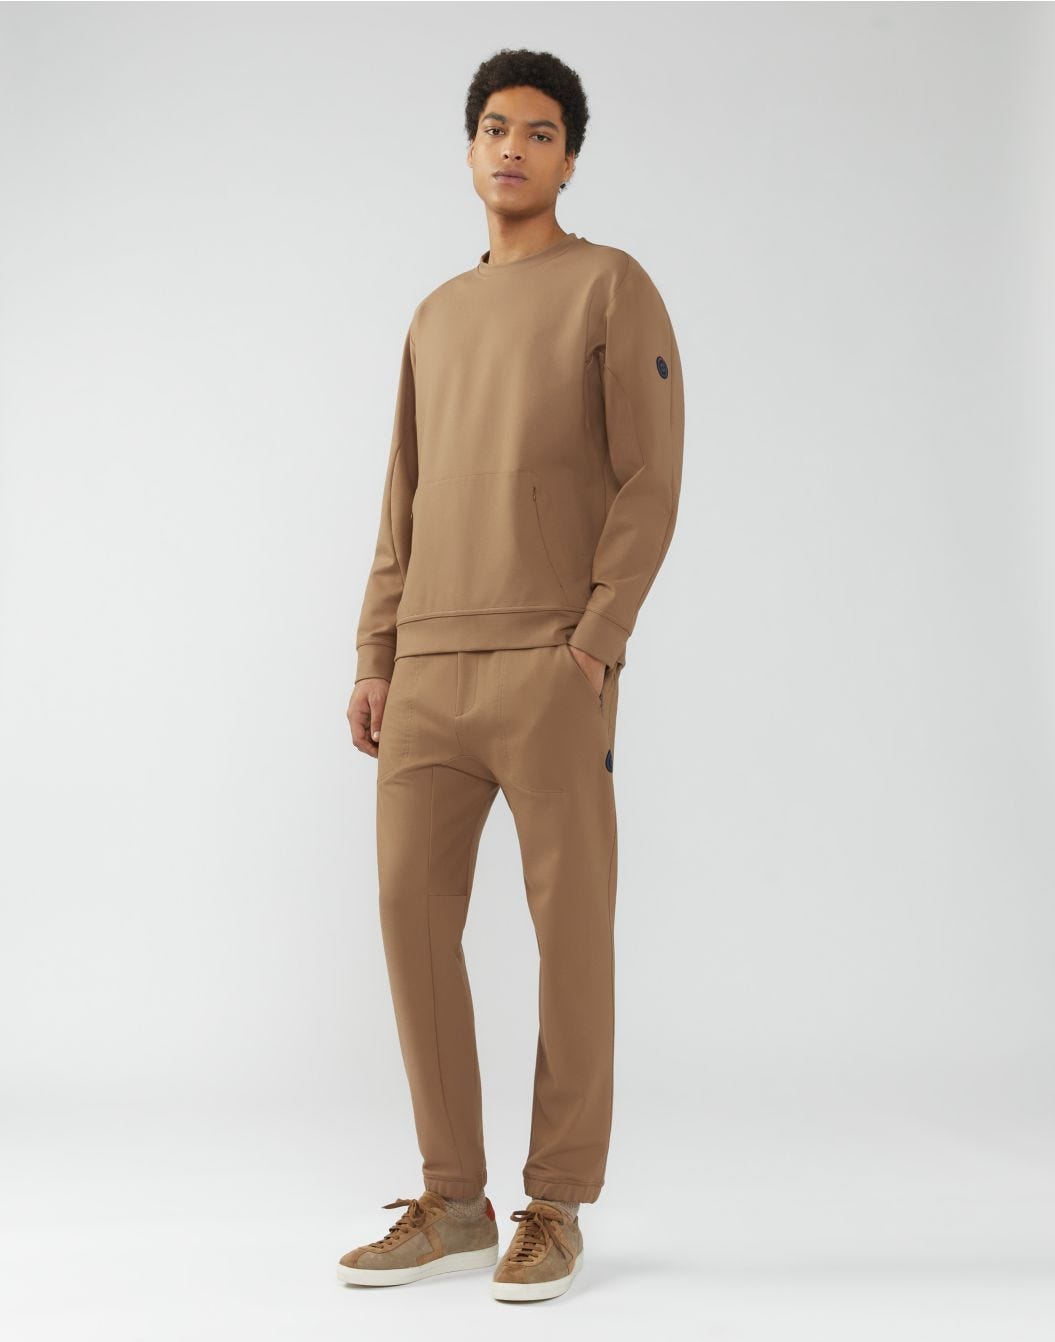 Camel-brown sweatshirt in hi-tech jersey - Easy Wear